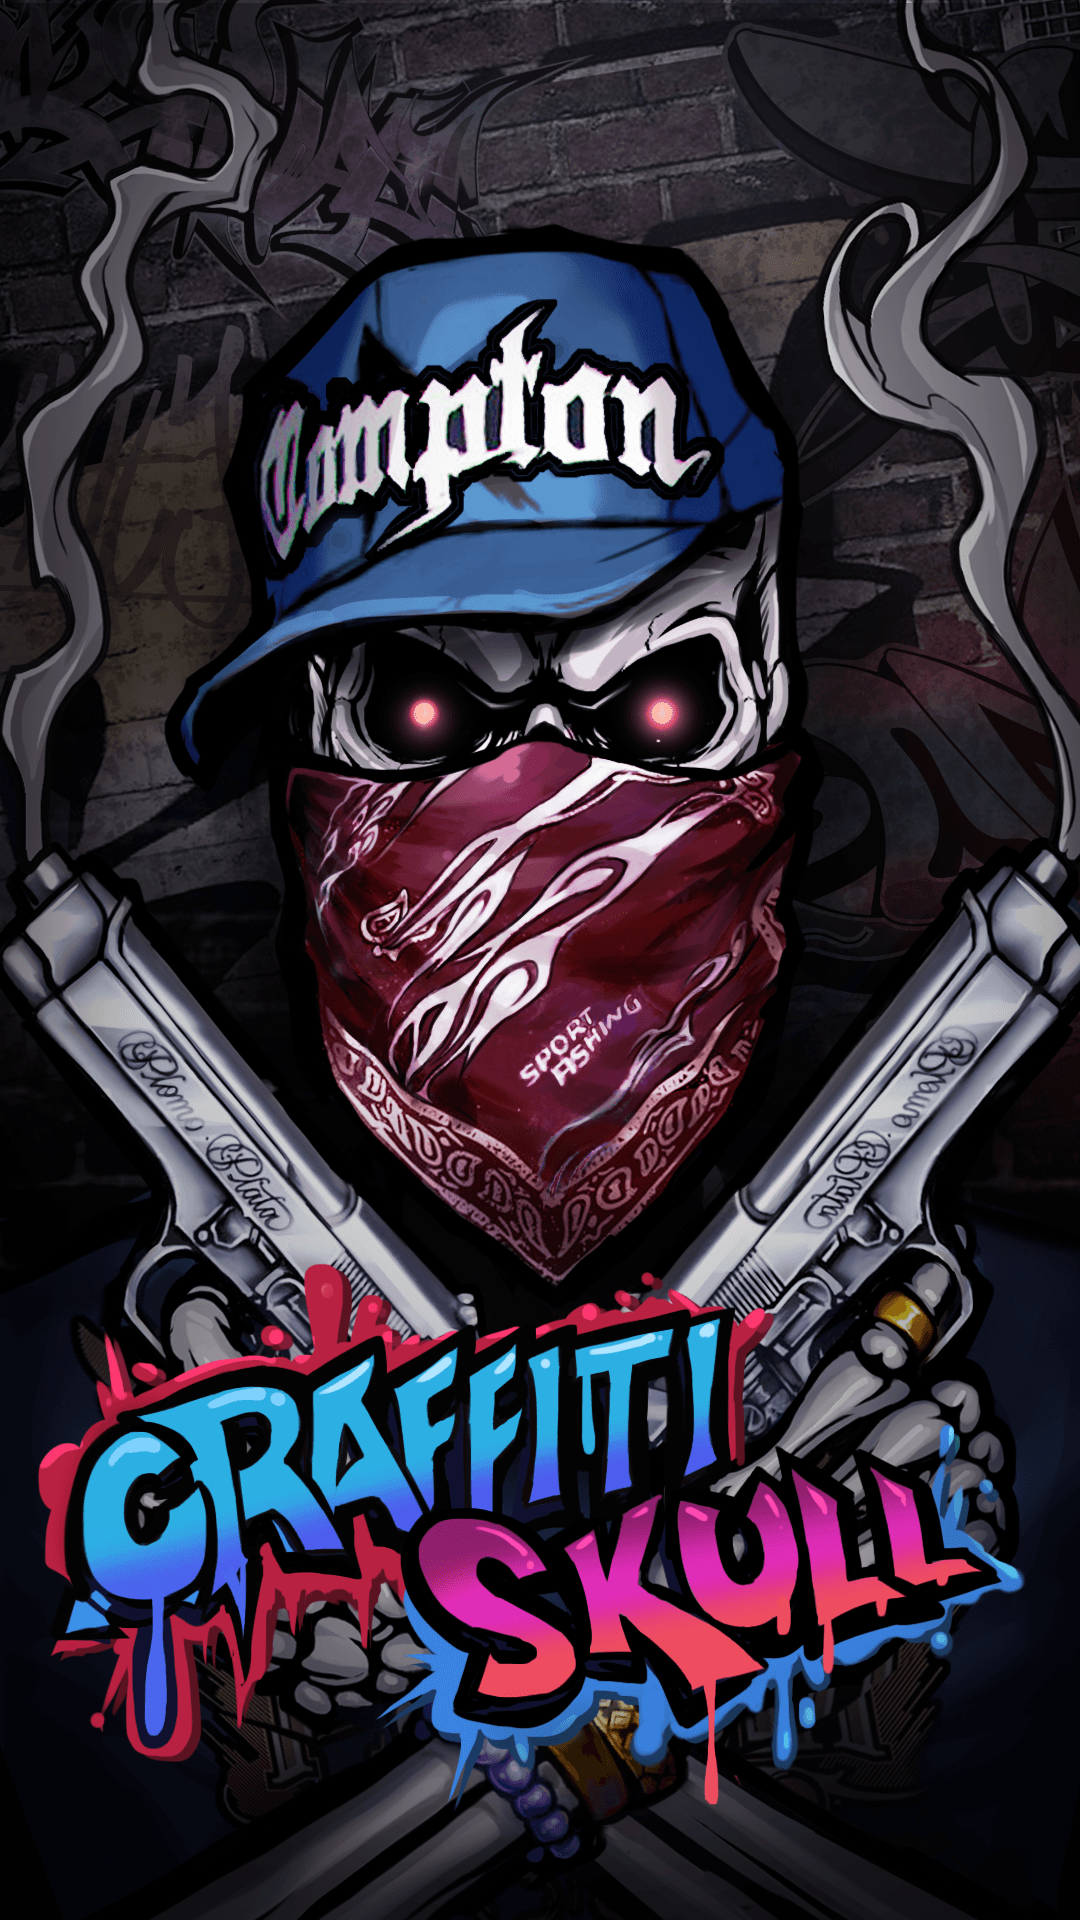 Download Wallpaper Graffiti Skull - KibrisPDR